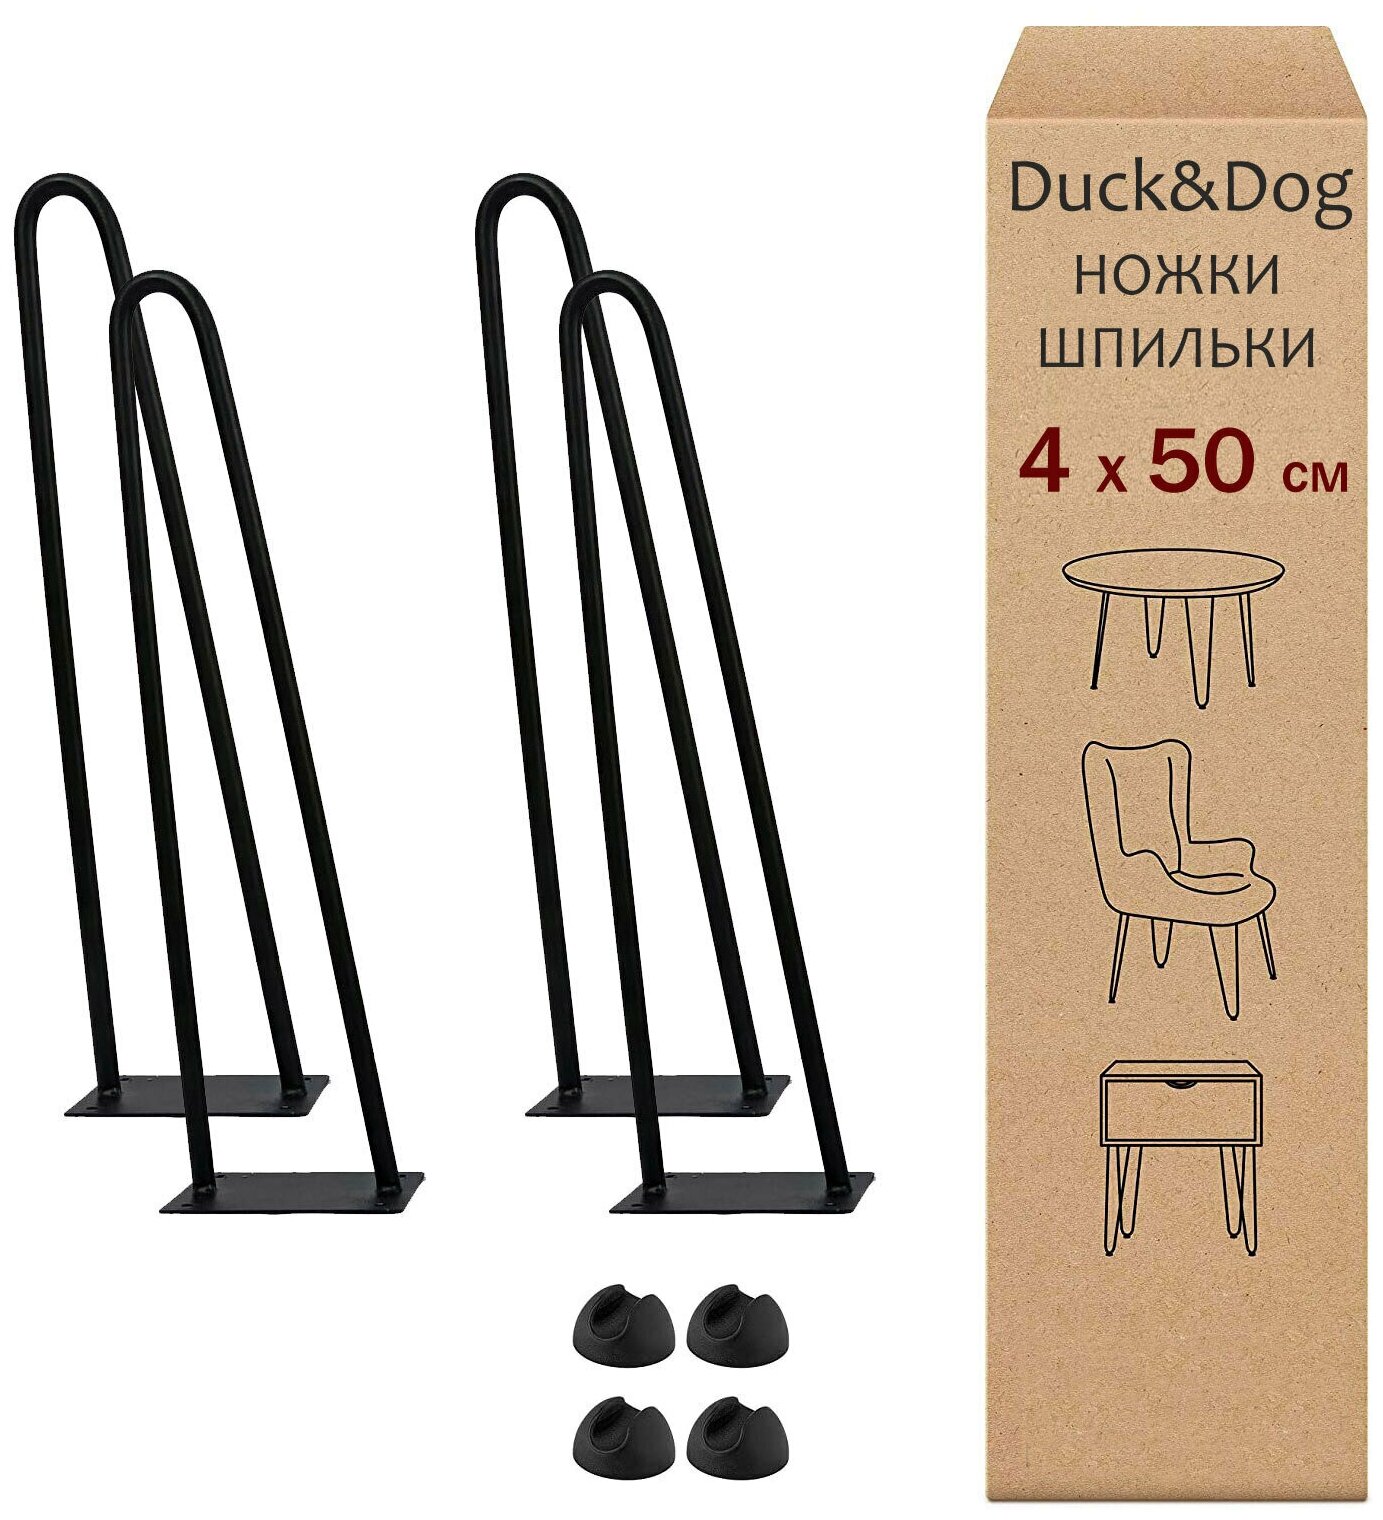 Мебельные ножки шпильки из металла лофт Duck&Dog / черные / Высота 50 см. / комплект 4 шт.